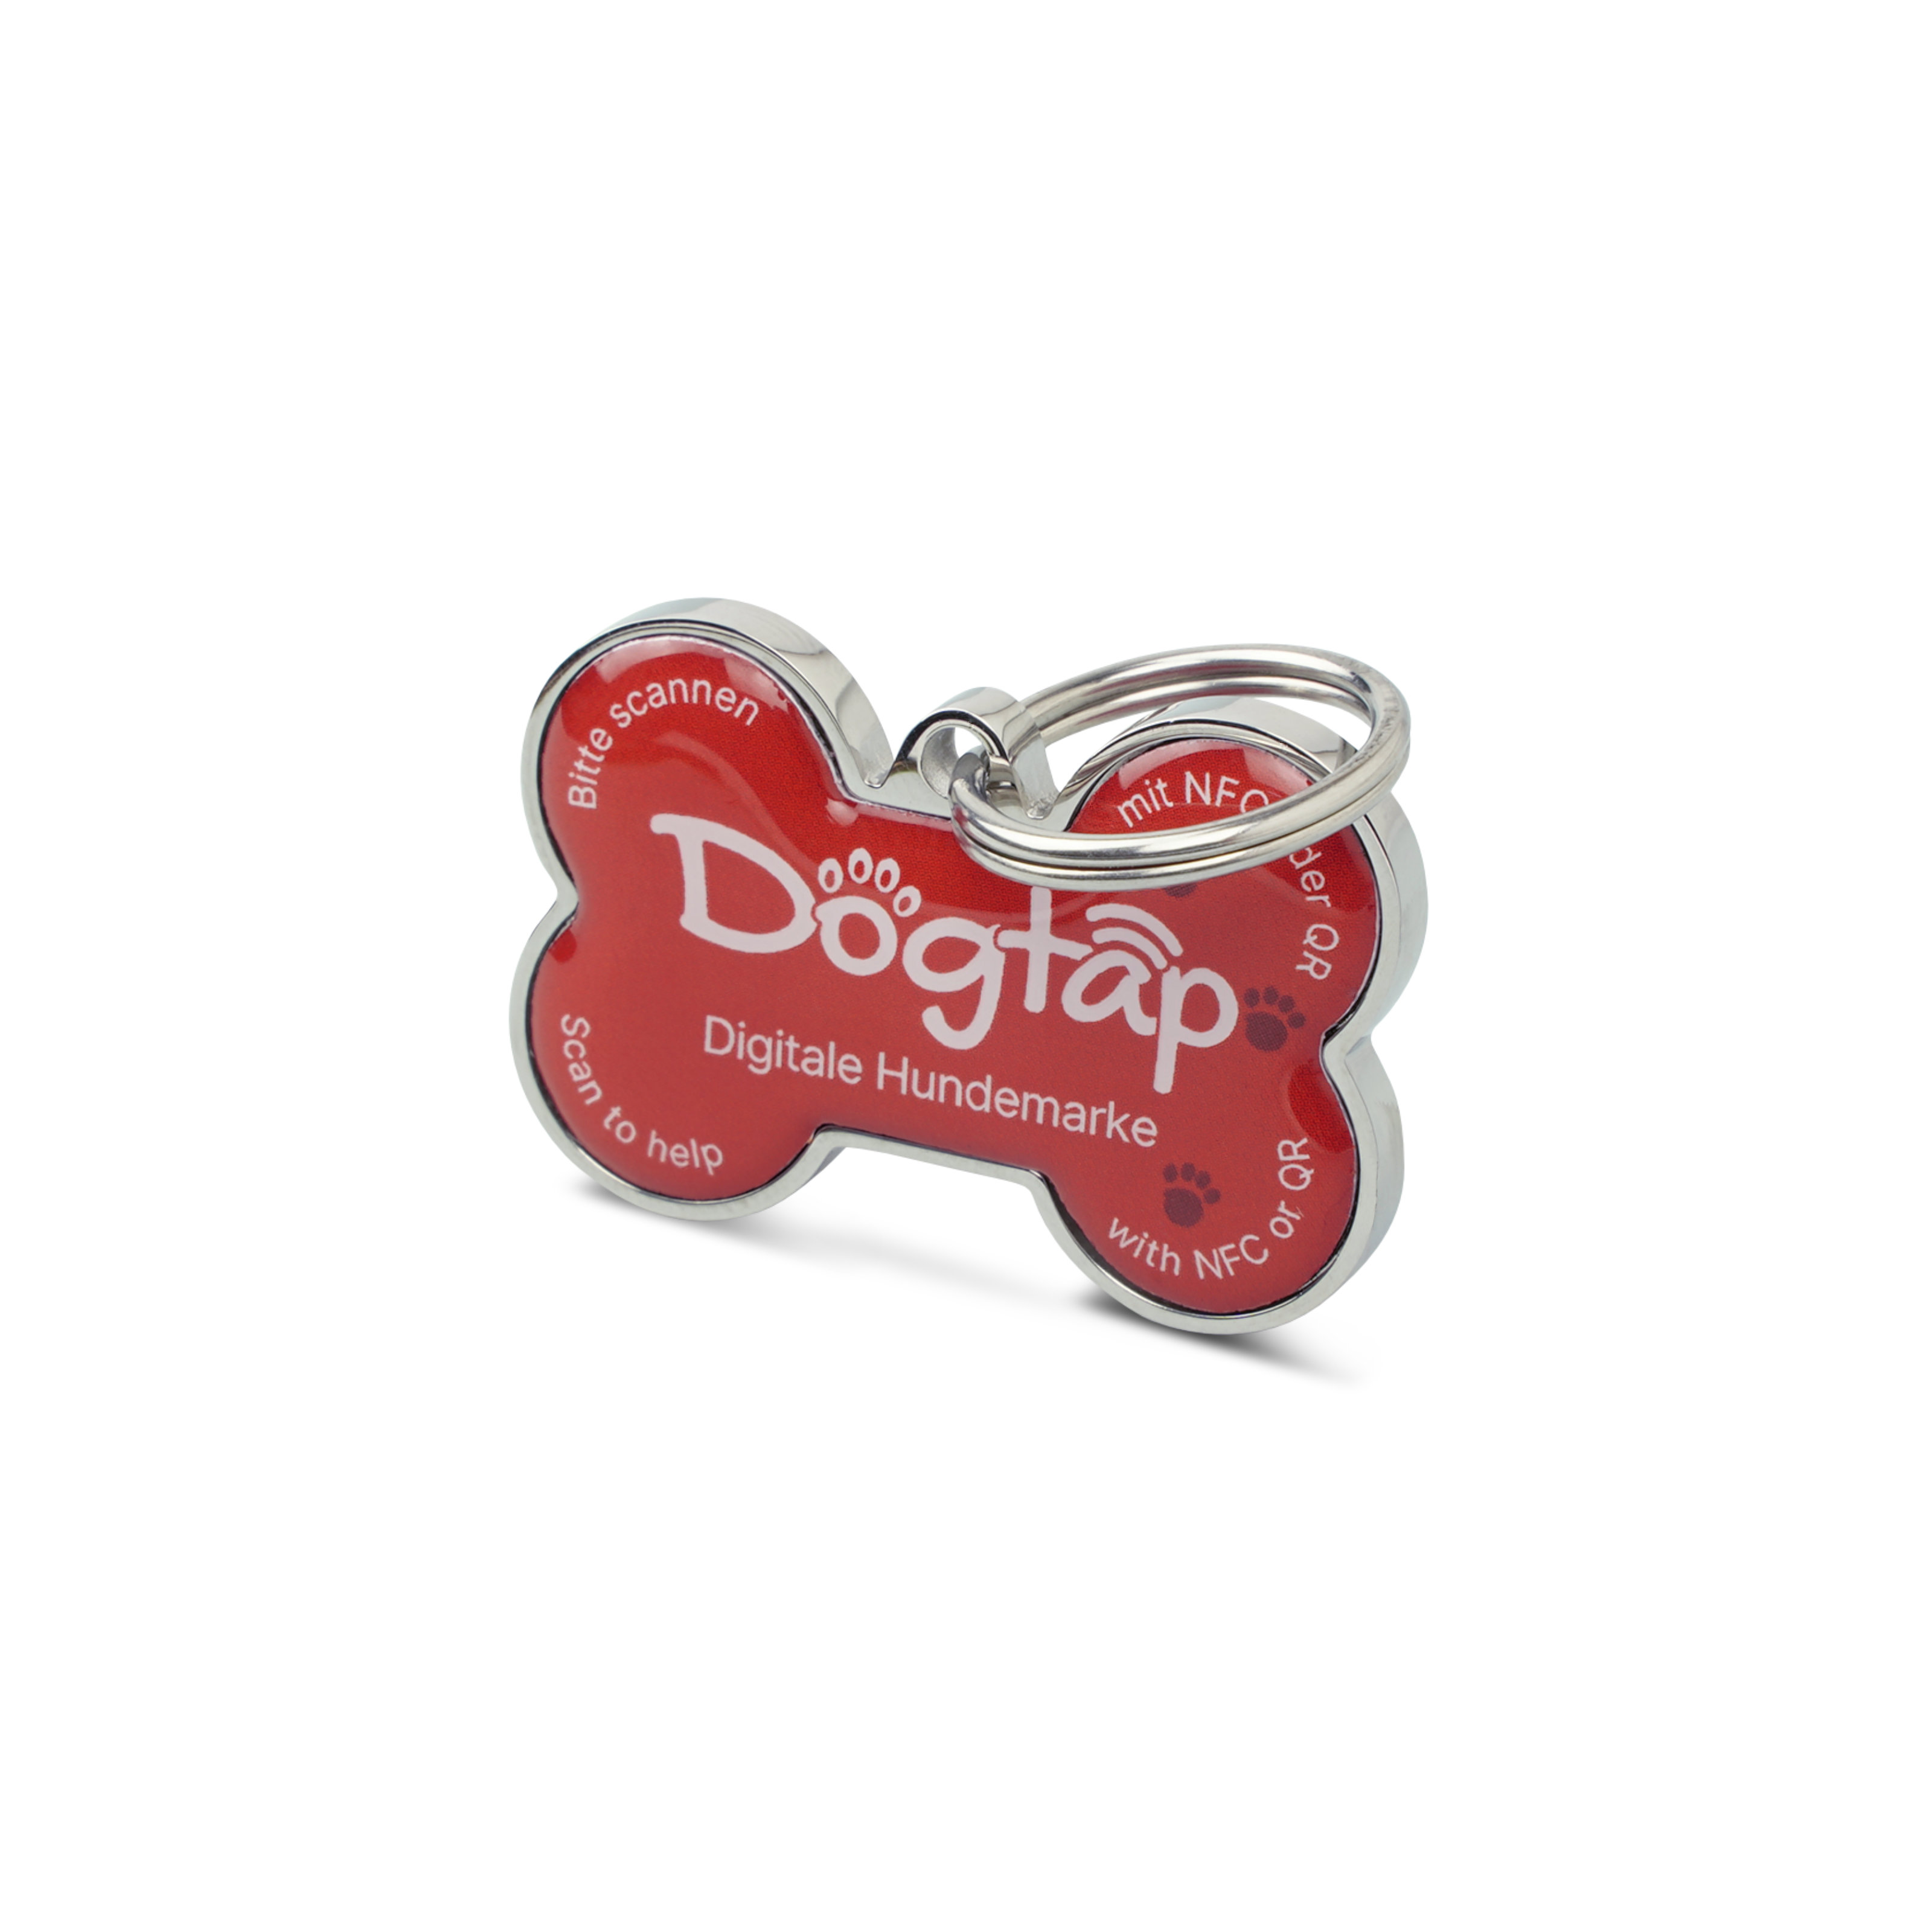 Dogtap Solid - Digital dog tag - PVC / Metal - 41.6 x 28.5 x 4.6 mm - red